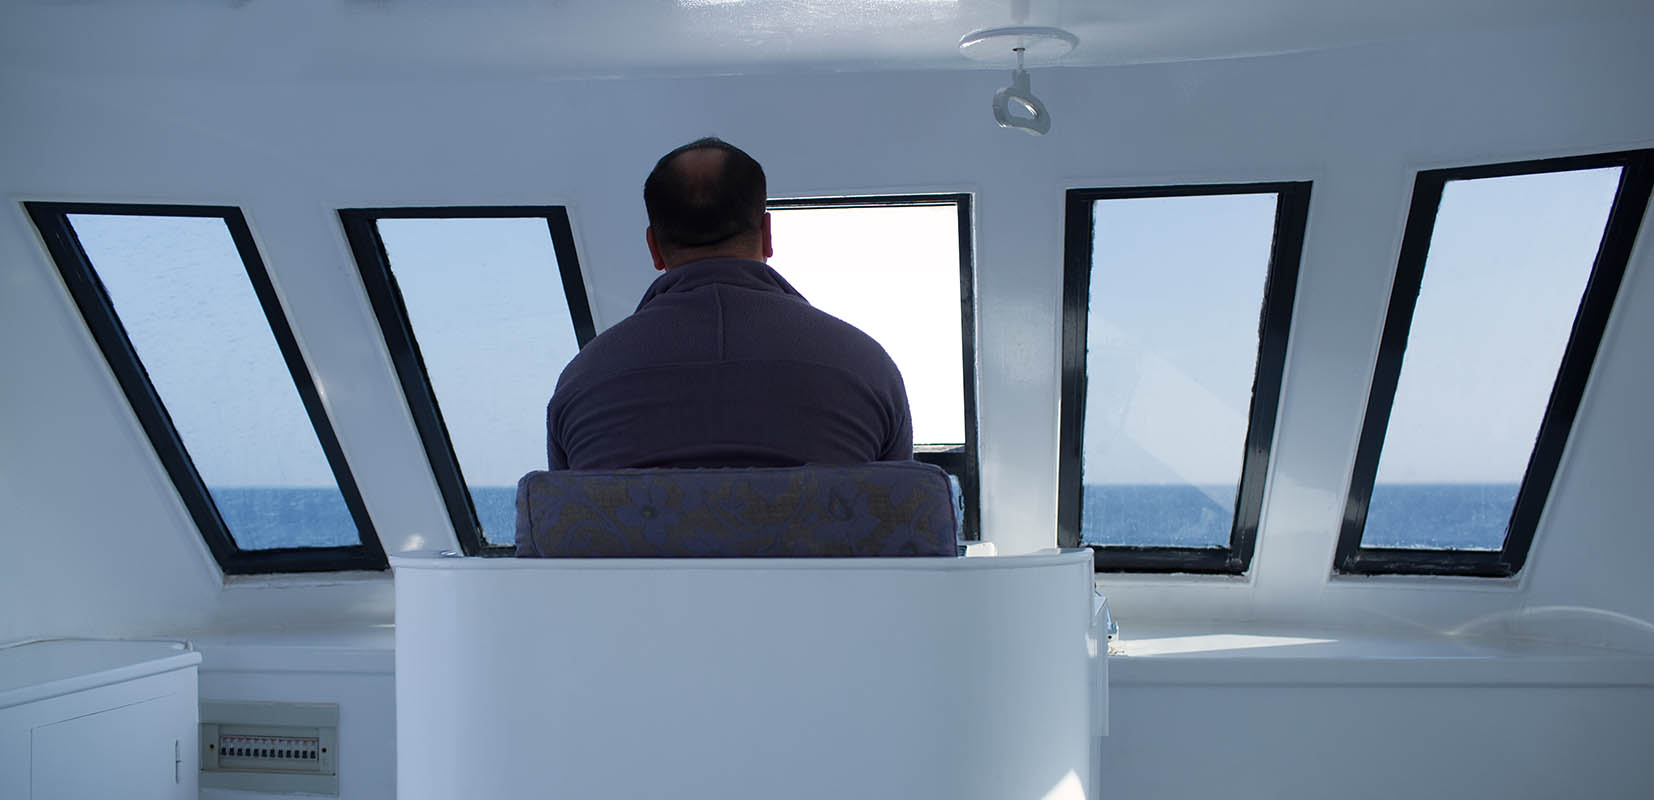 marinero mirando el mar desde el puente de mando